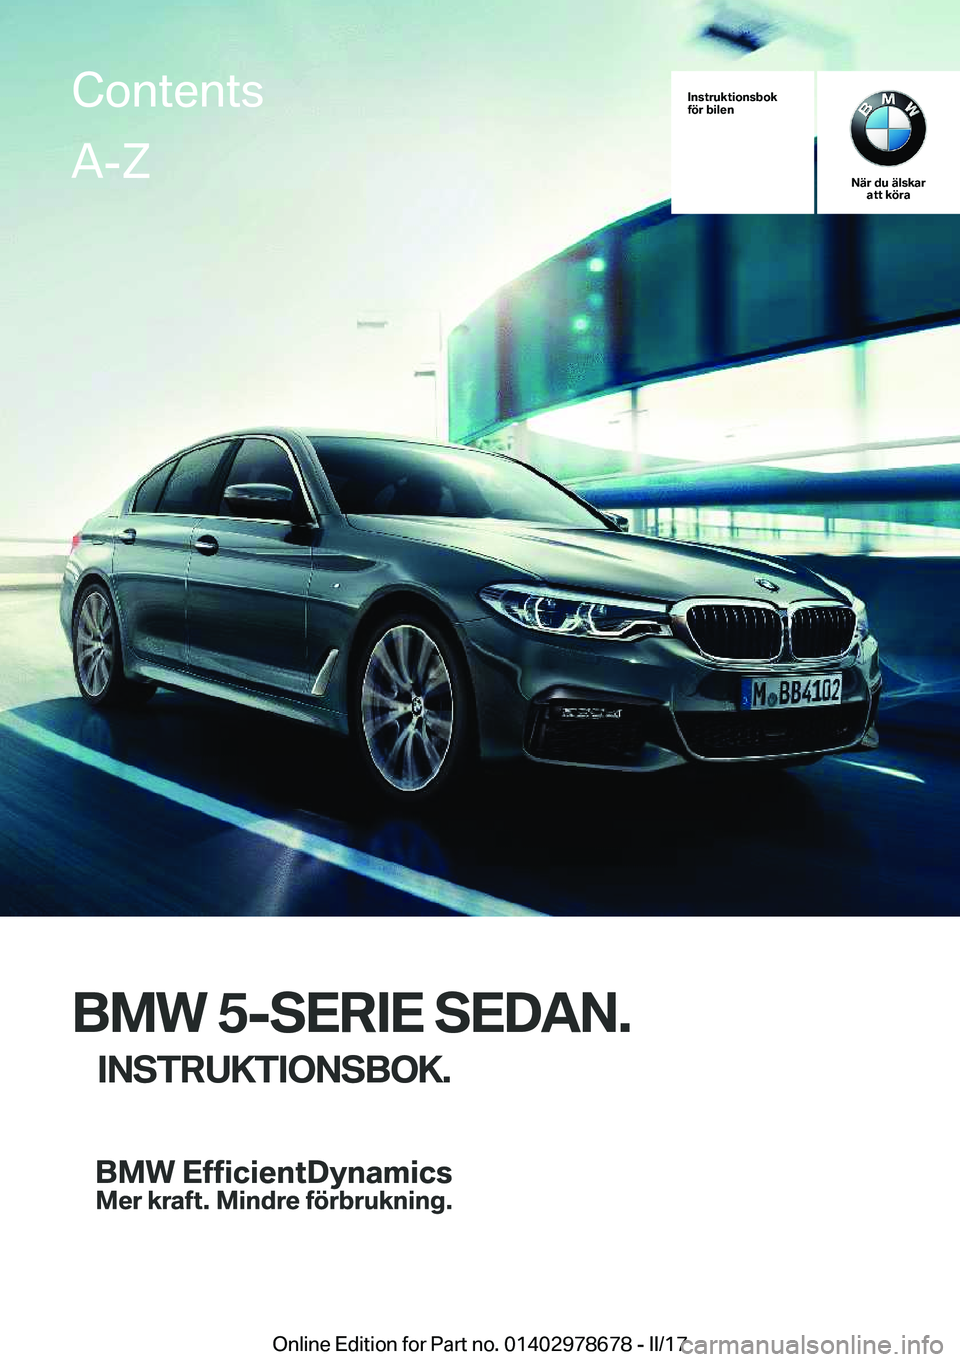 BMW 5 SERIES 2017  InstruktionsbÖcker (in Swedish) �I�n�s�t�r�u�k�t�i�o�n�s�b�o�k
�f�